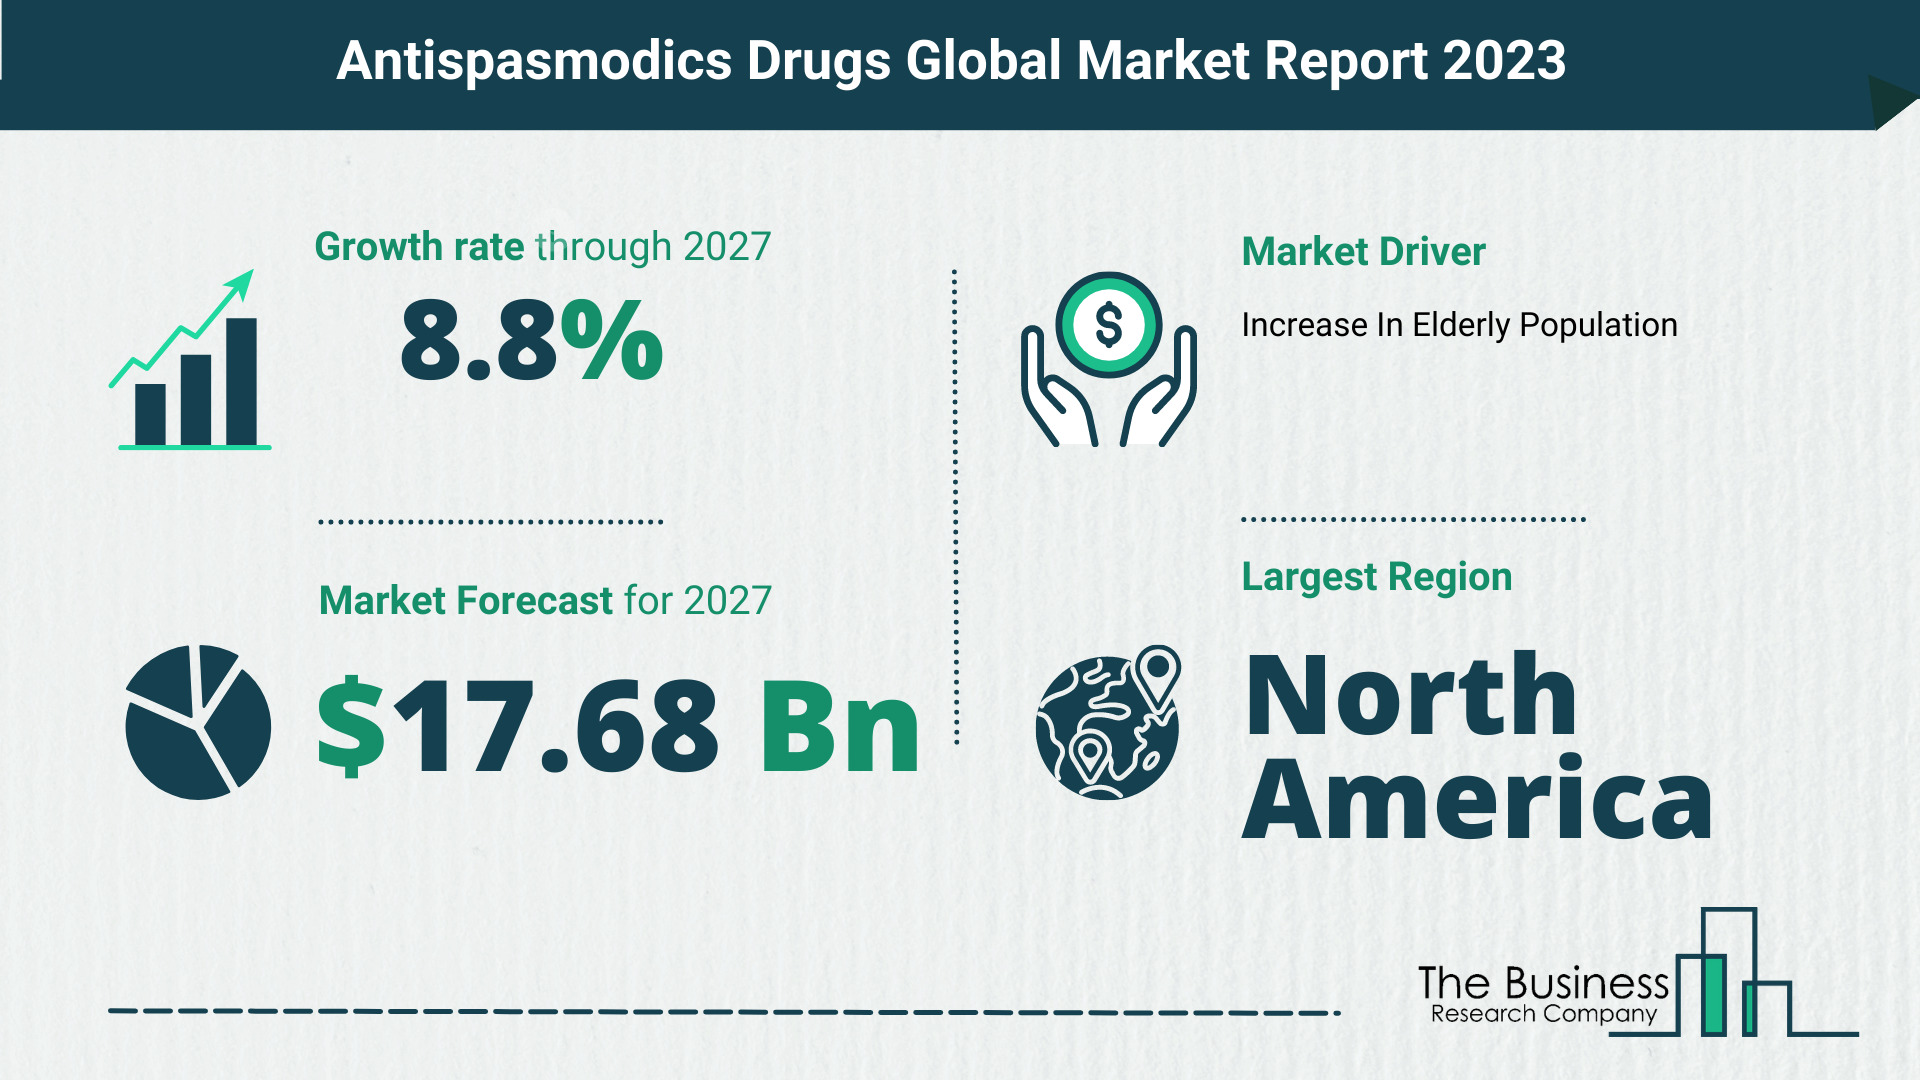 Global Antispasmodics Drugs Market Size